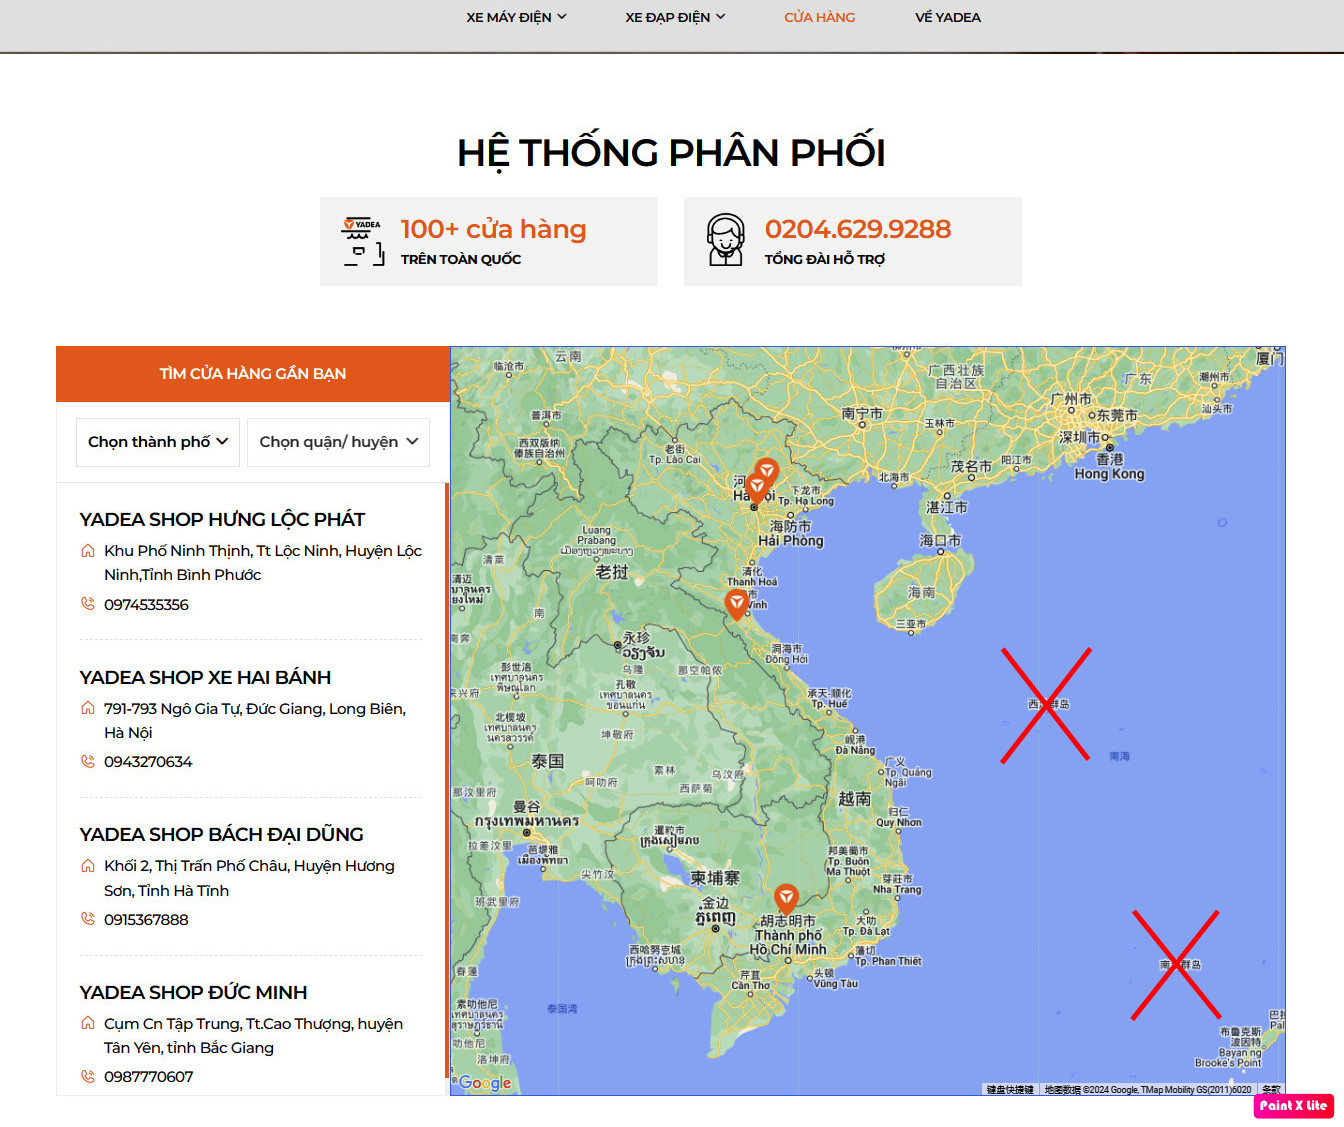 Giao diện bản đồ của Yadea Việt Nam hiển thị tên hai quần đảo Hoàng Sa, Trường Sa theo tiếng Trung Quốc (dấu X). Ảnh: Chụp màn hình sáng 19/5